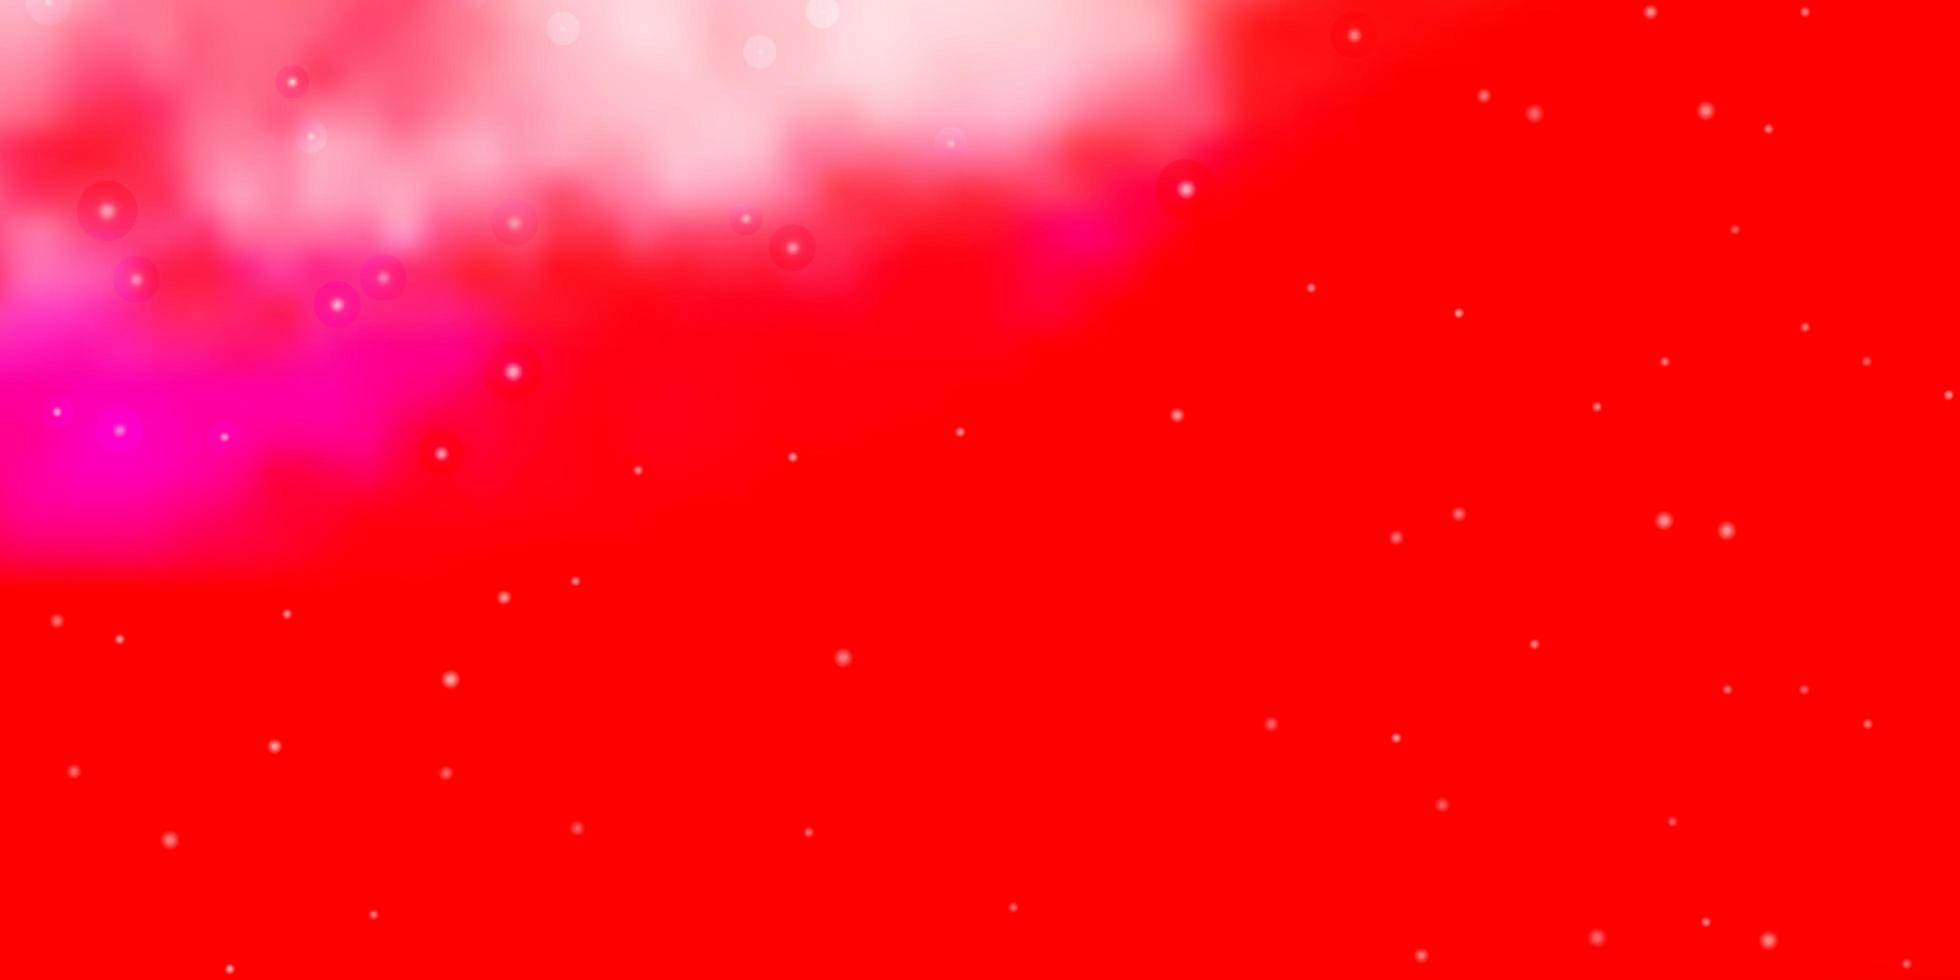 ljusröd vektorbakgrund med färgglada stjärnor. färgglad illustration med abstrakta lutningsstjärnor. mönster för webbplatser, målsidor. vektor